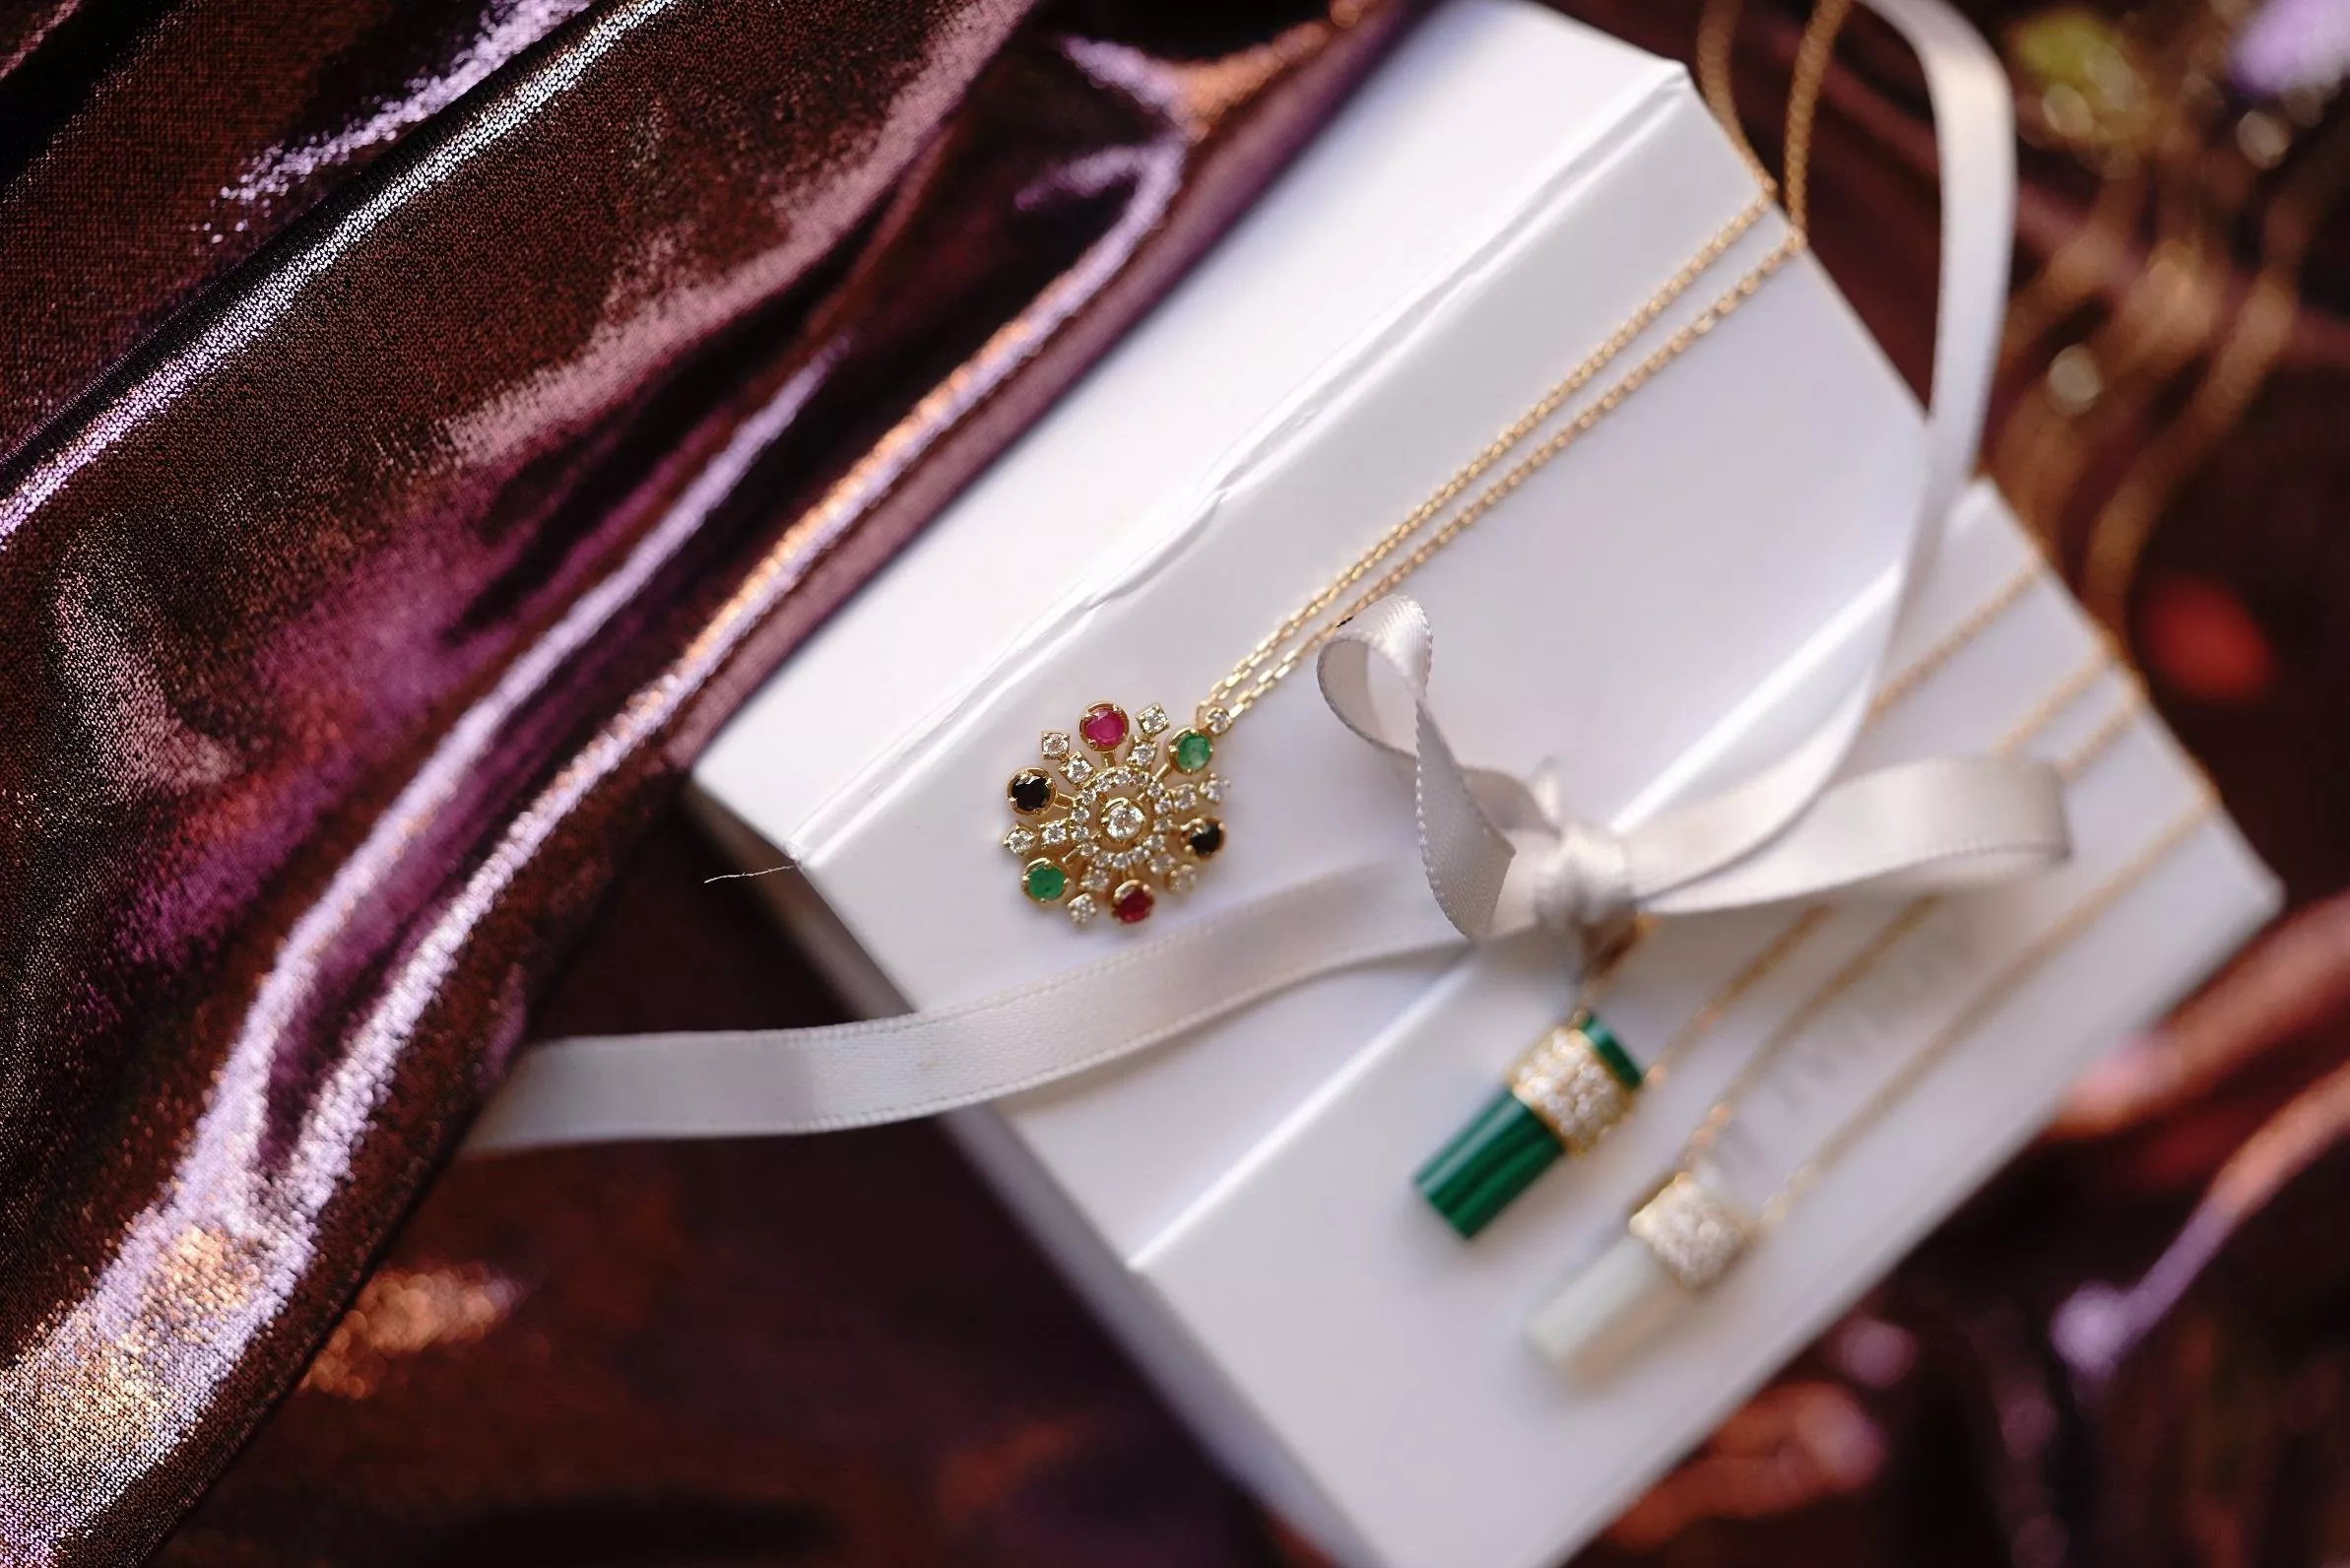 أفكار هدايا في اليوم الوطني الاماراتي 48: مجوهرات وملابس مستوحاة من المناسبة